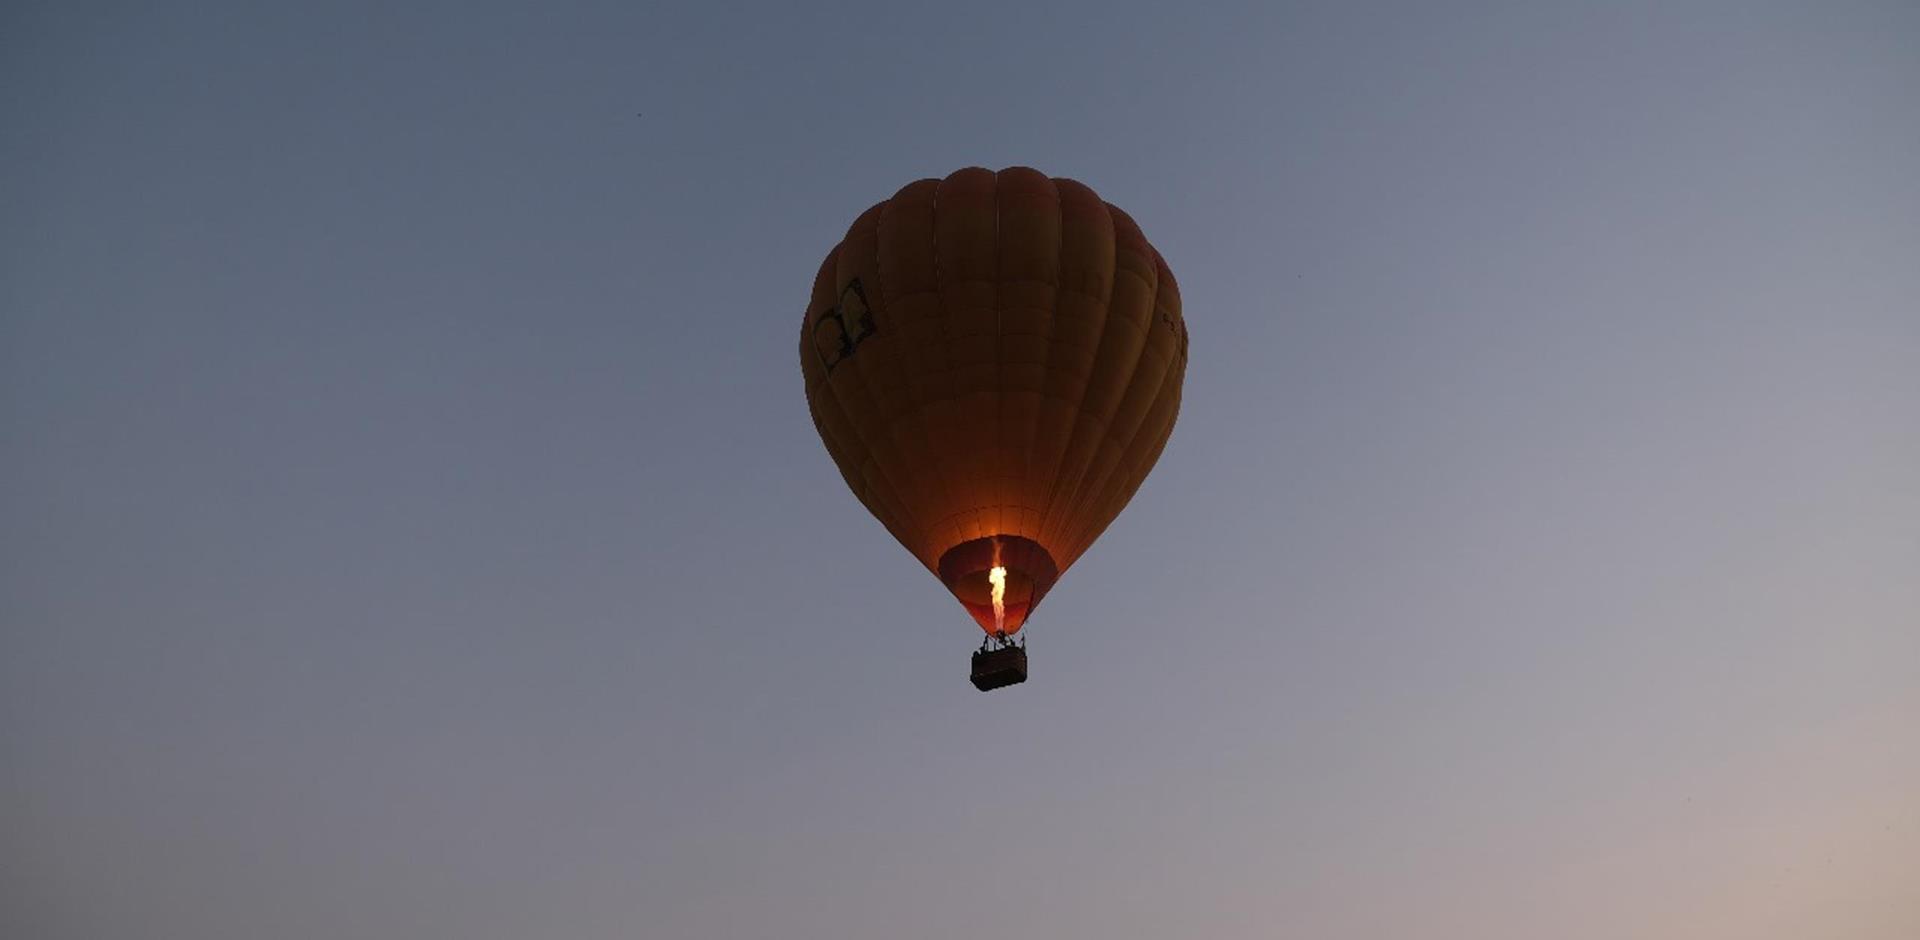 Hot air balloon ride, Cambodia